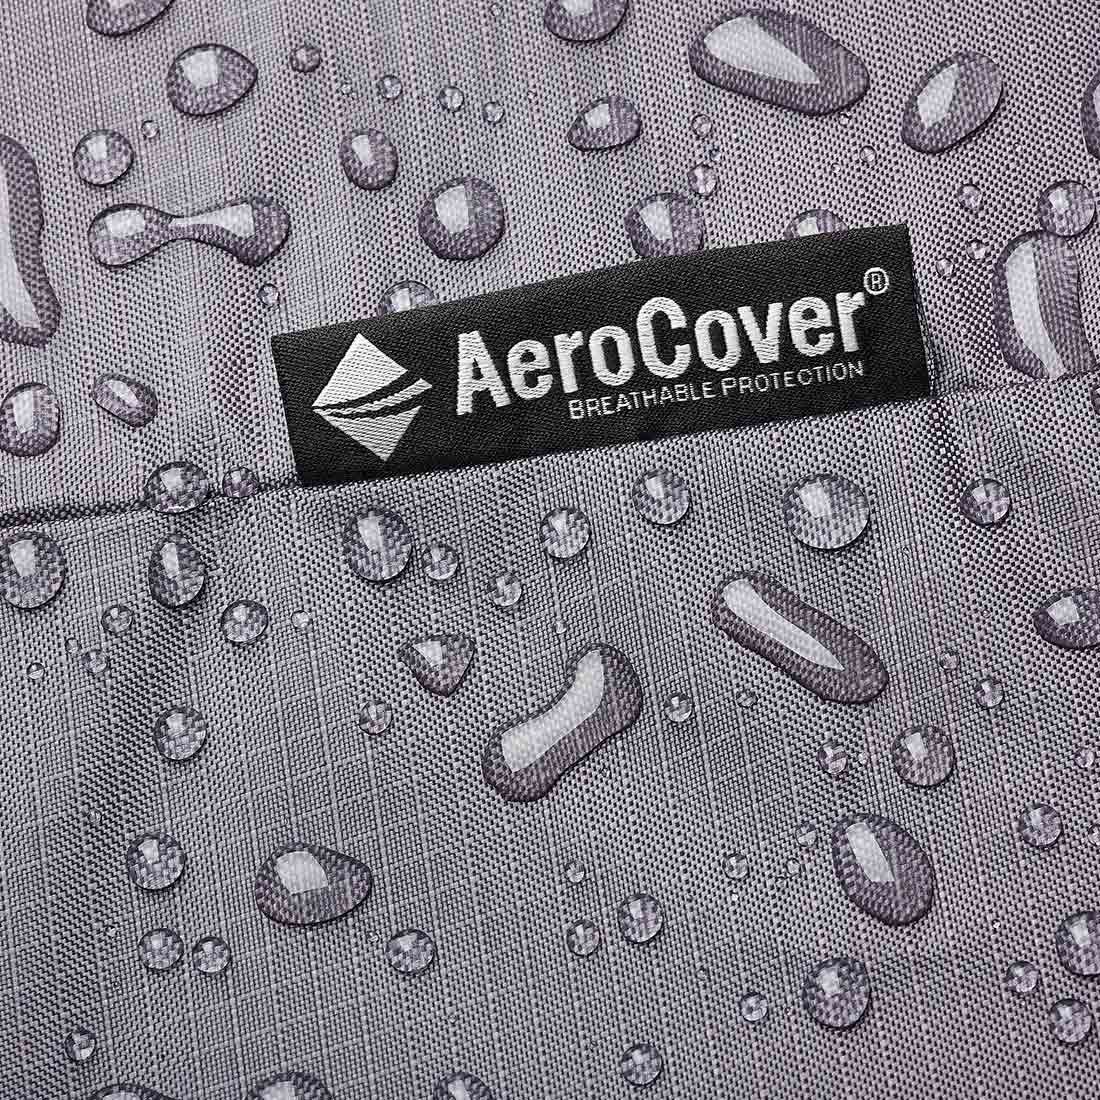 AeroCover Schutzhülle für Sitzgruppe 255x255x70cm Polyester